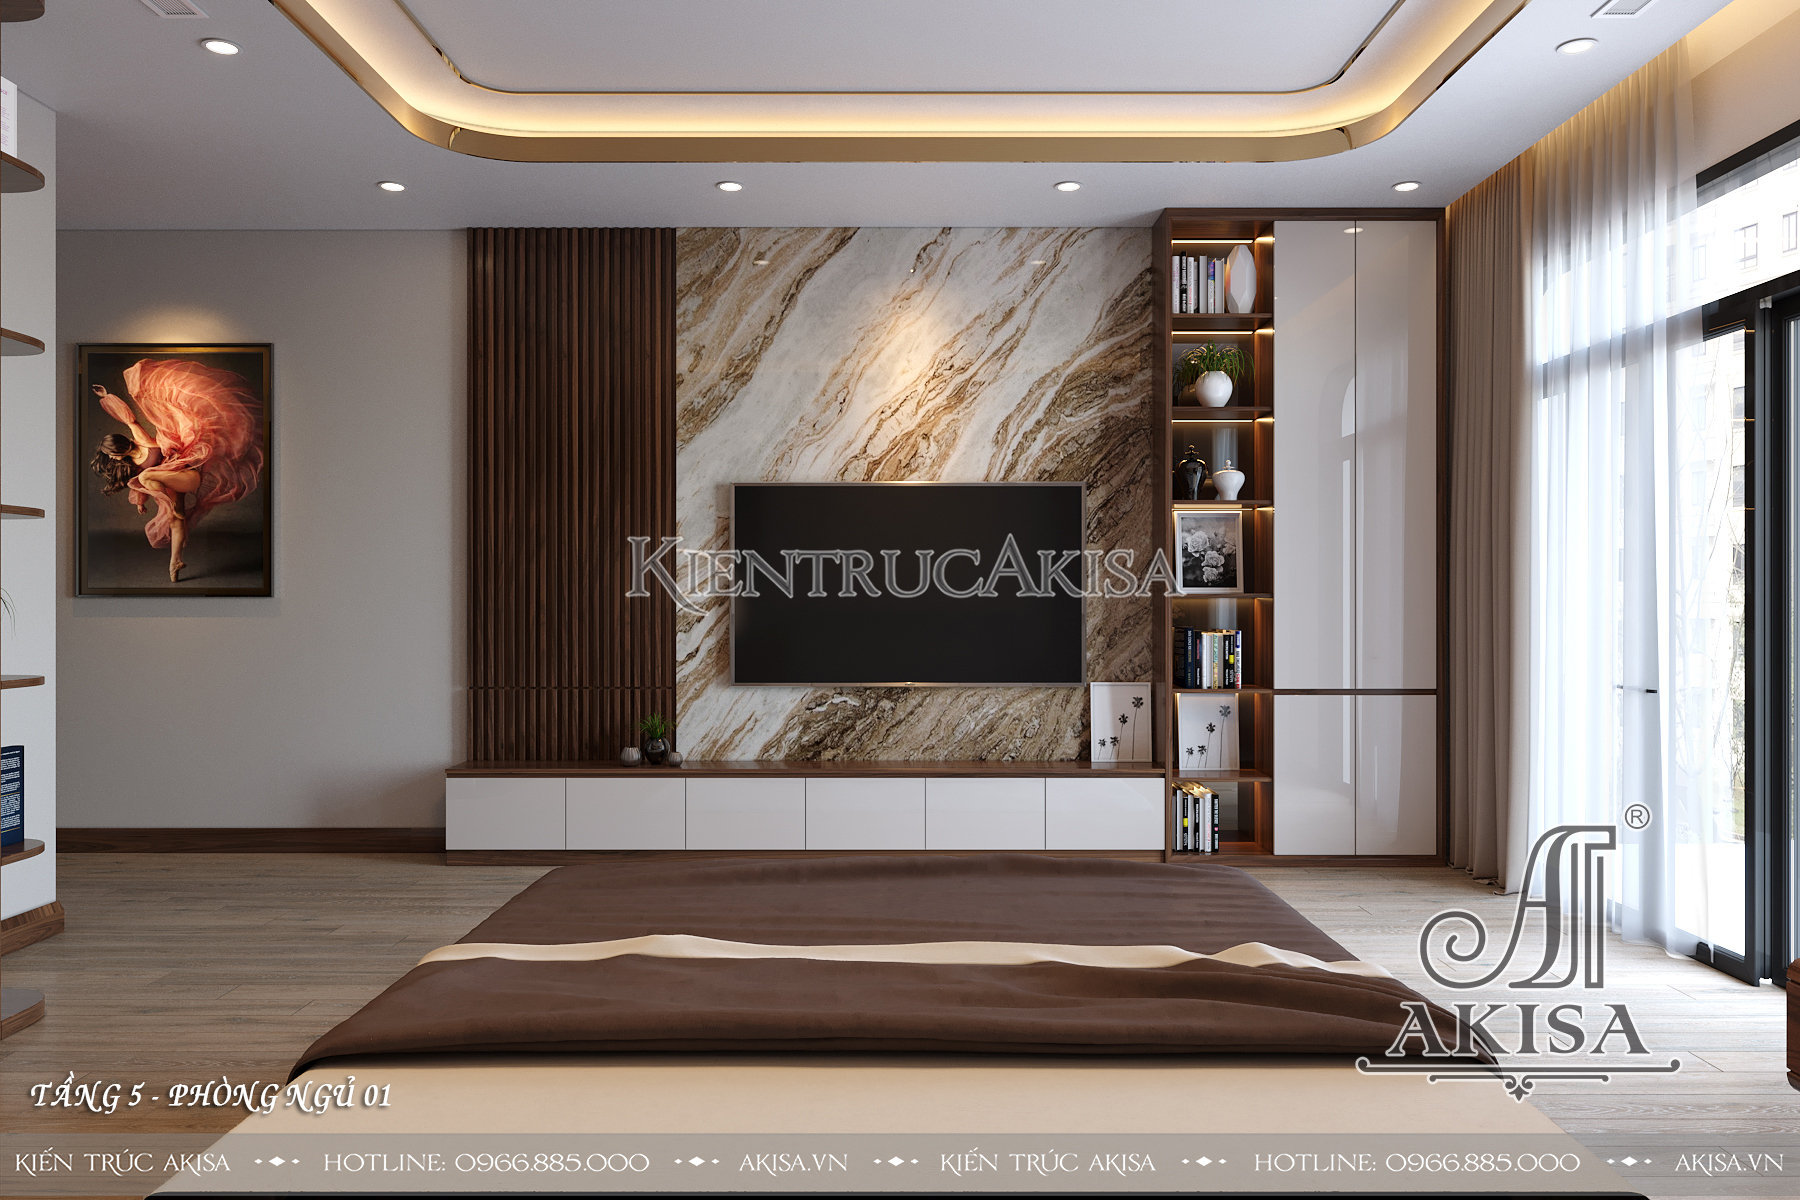 Thiết kế nội thất gỗ óc chó đẹp hiện đại - Phòng ngủ 